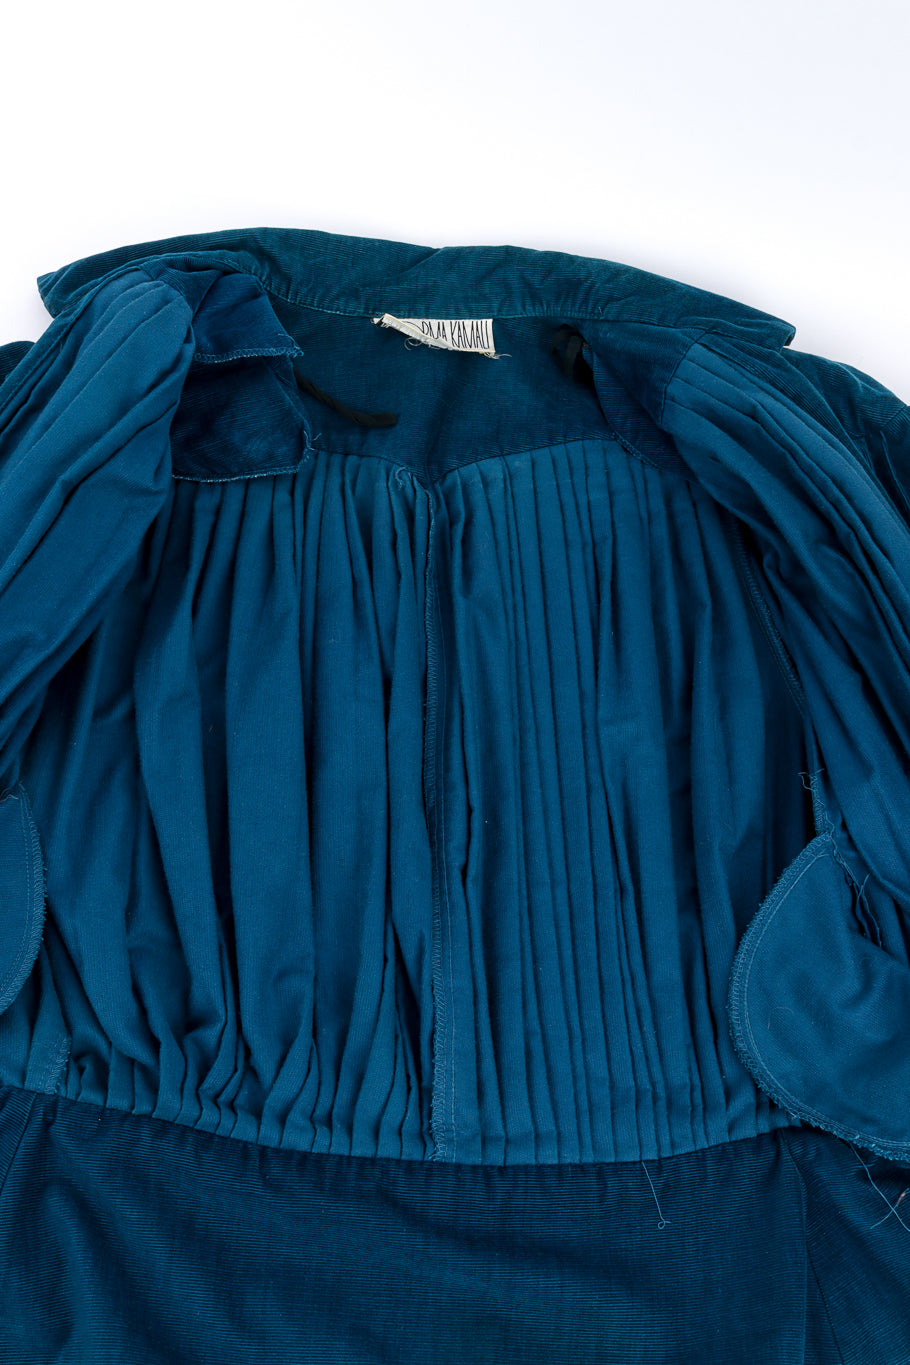 Pleated Corduory Jacket & Skirt Set by Norma Kamali jacket lining @recess la